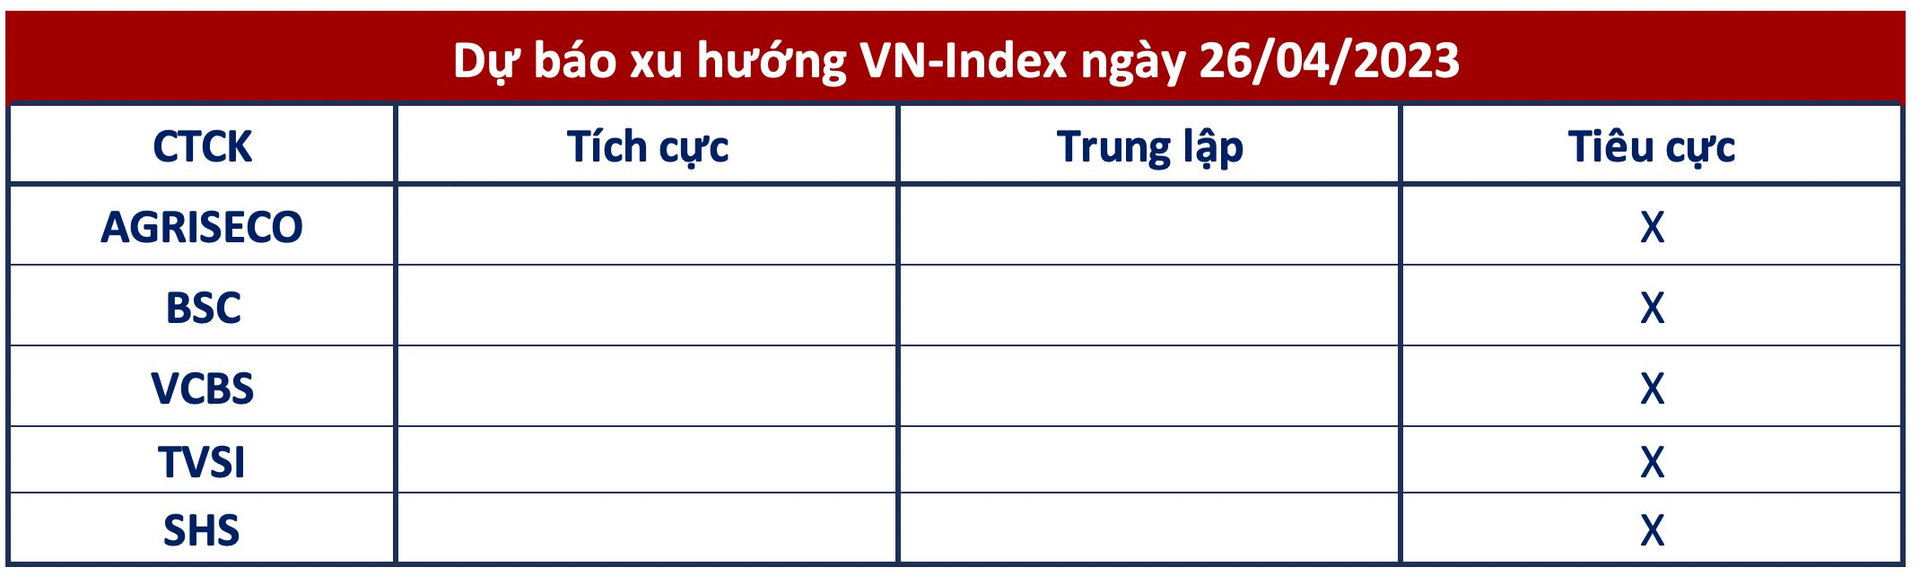 Góc nhìn CTCK: Áp lực nghỉ lễ tới gần, VN-Index có thể tiếp tục xu hướng điều chỉnh - Ảnh 1.